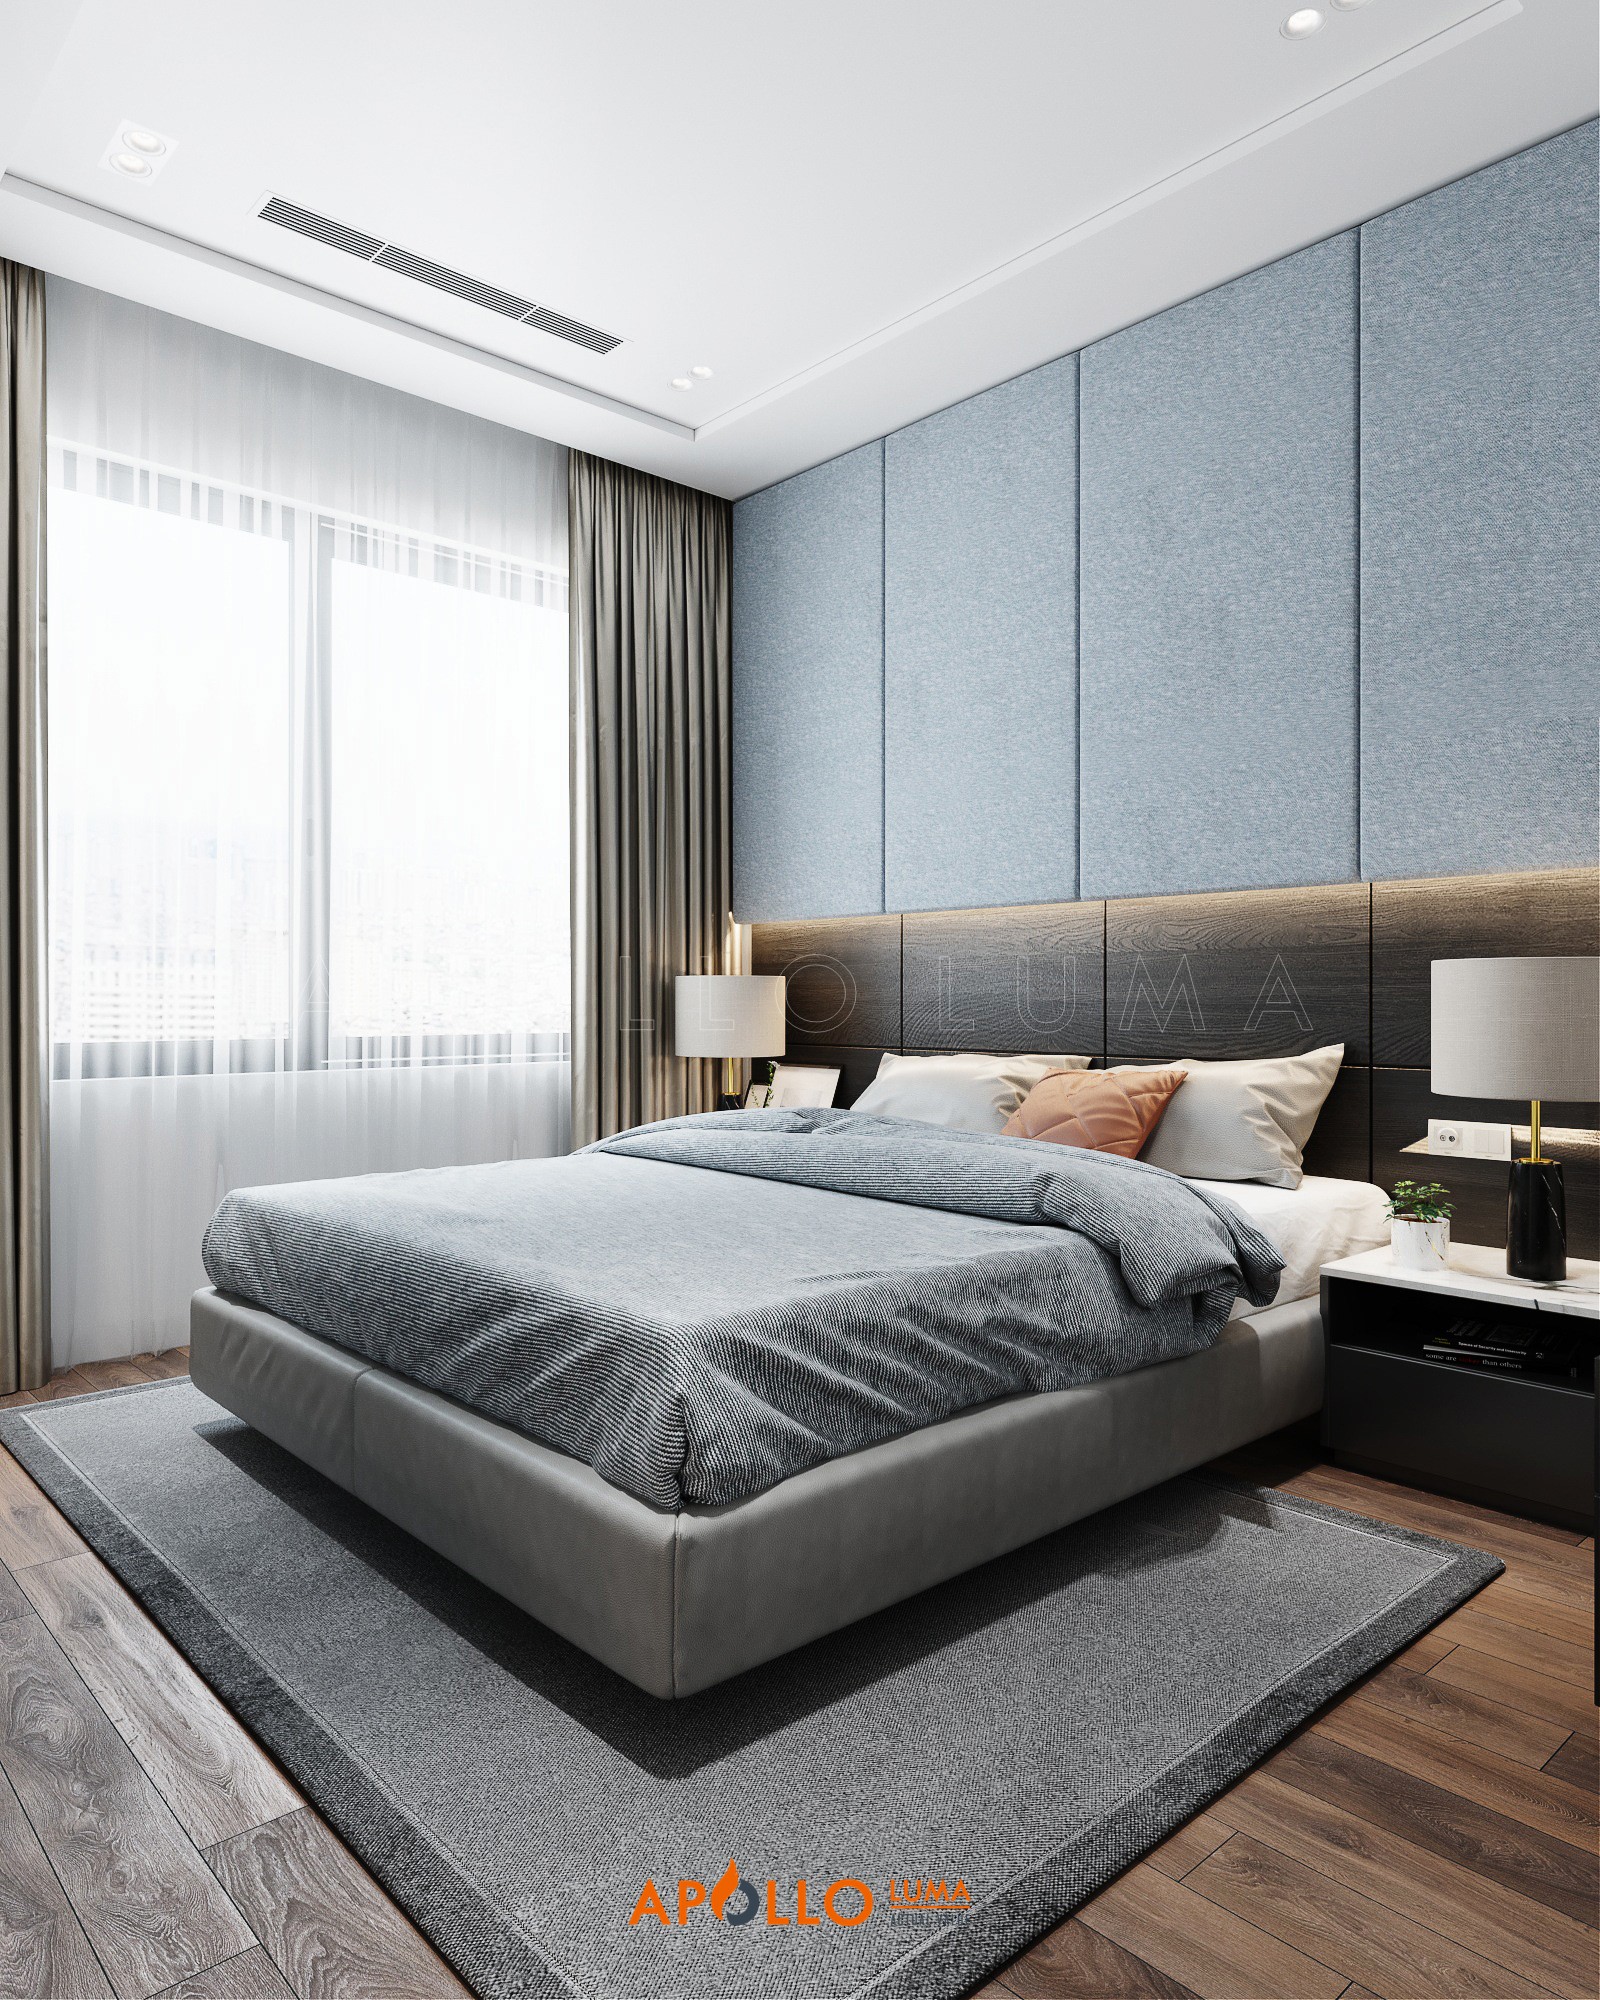 Thiết kế nội thất căn hộ 1 phòng ngủ Vinhomes Smart City Tây Mỗ